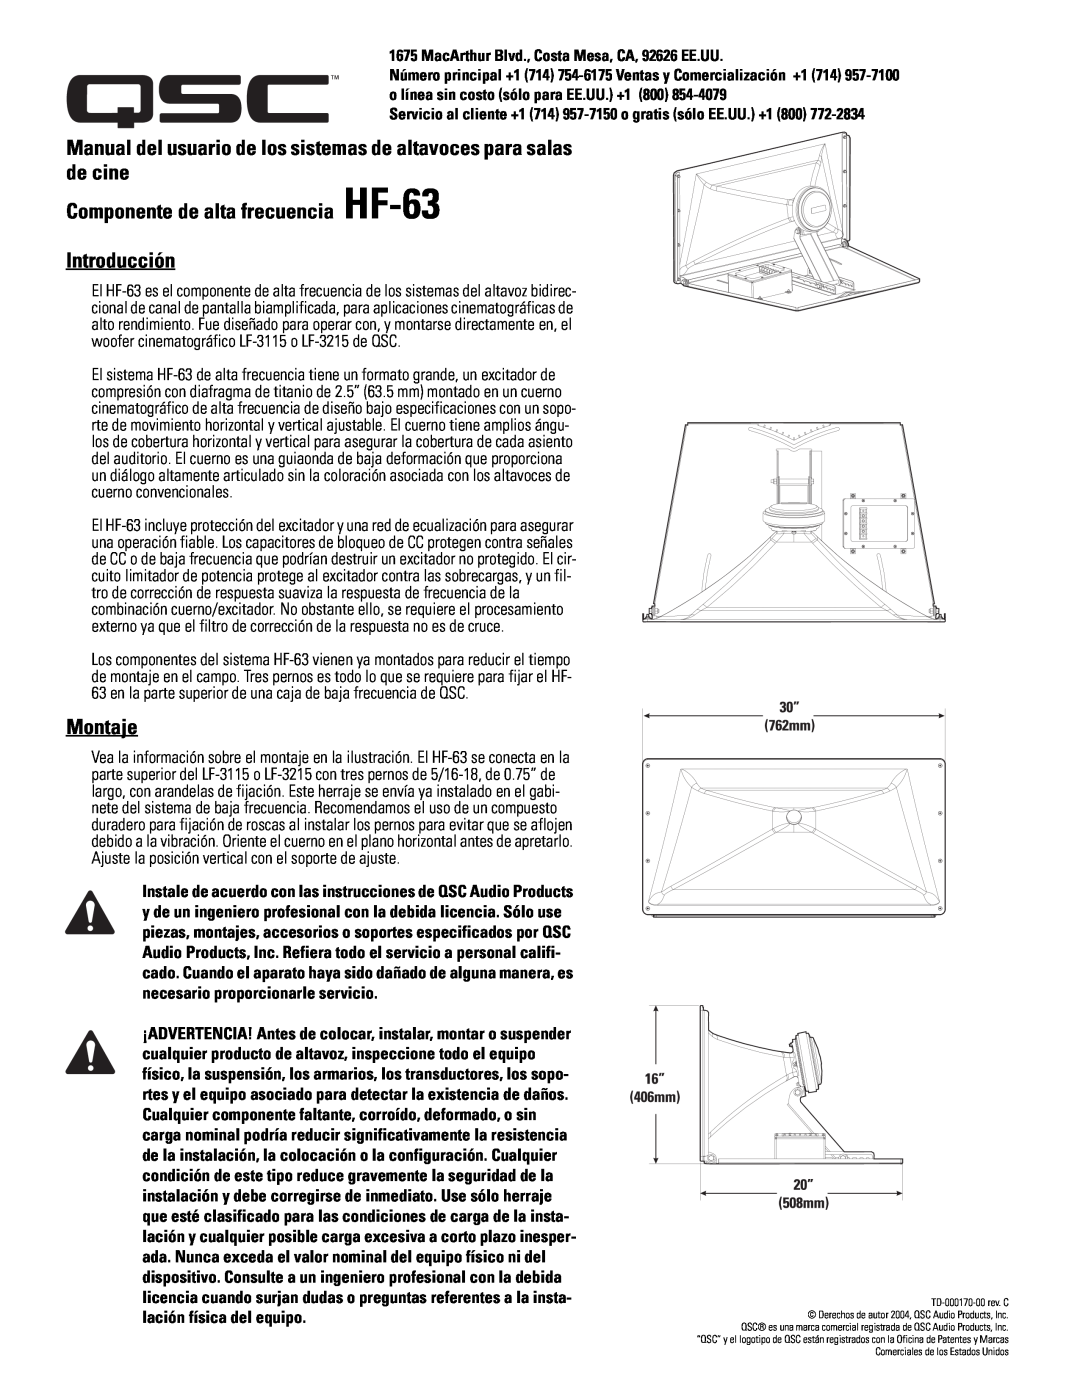 QSC Audio SC-322 specifications Componente de alta frecuencia HF-63 Introducción, Montaje 